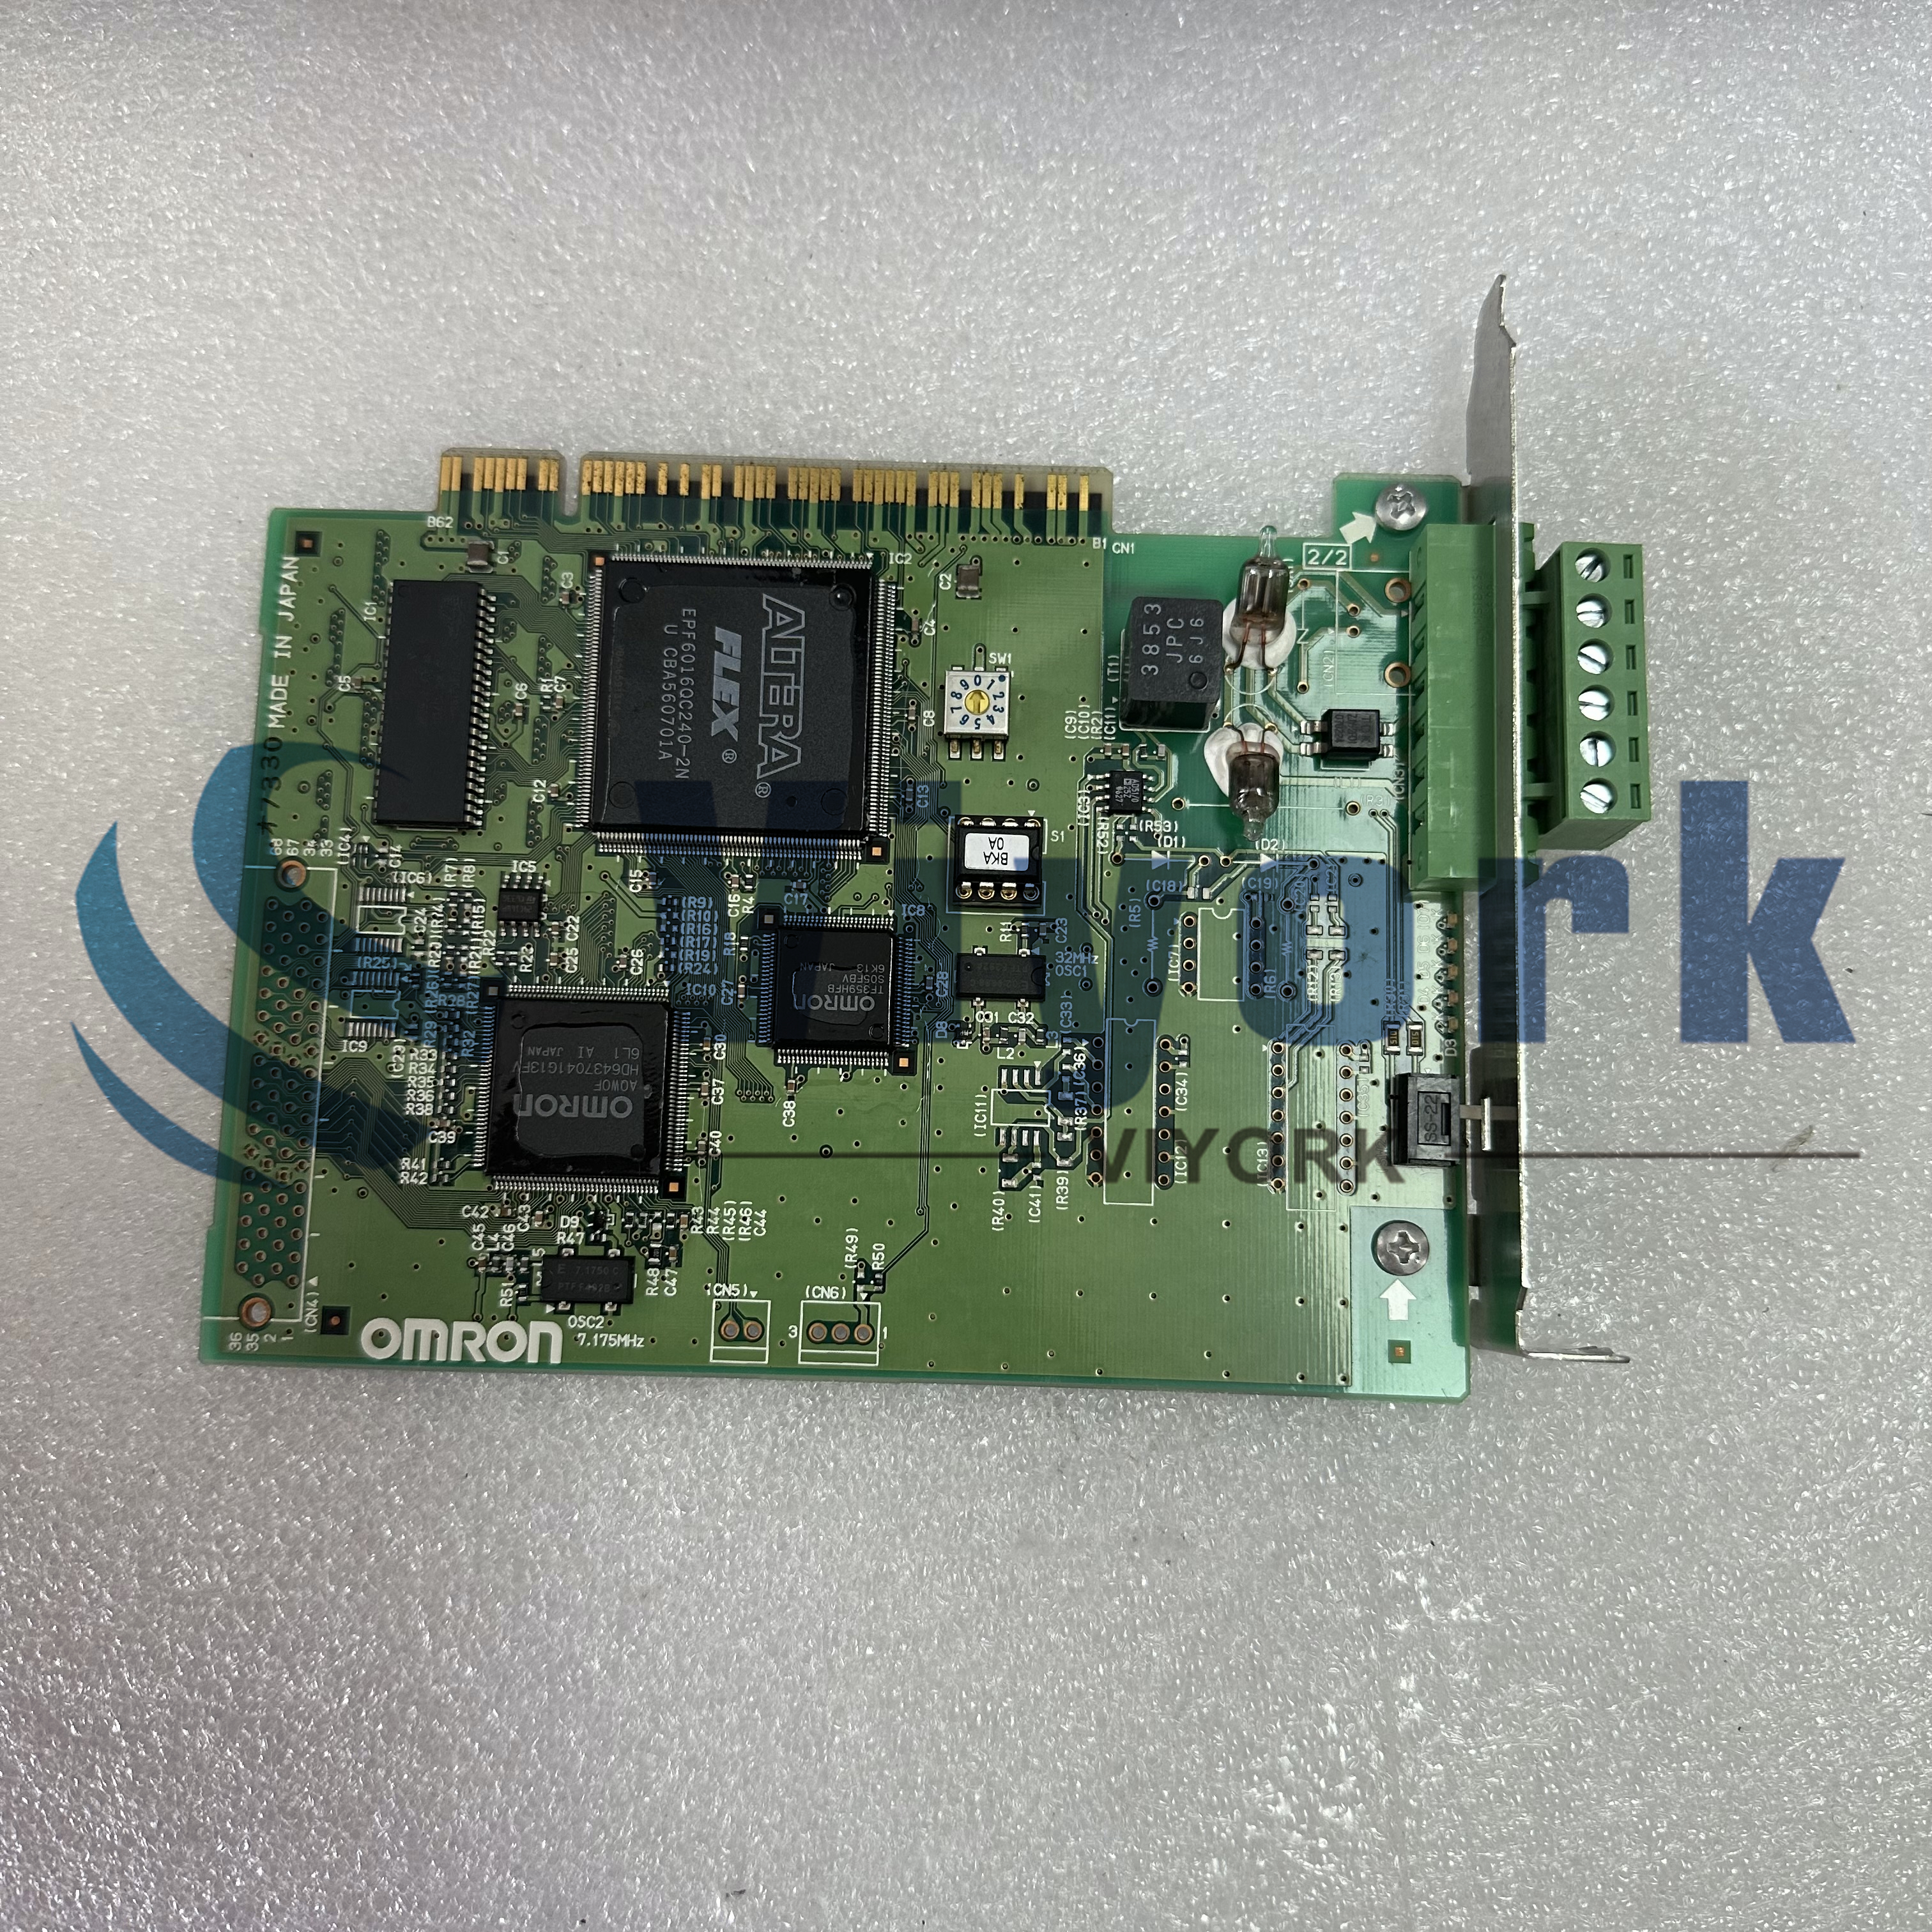 Omron 3G8F7-CLK21-V1 PC BOARD